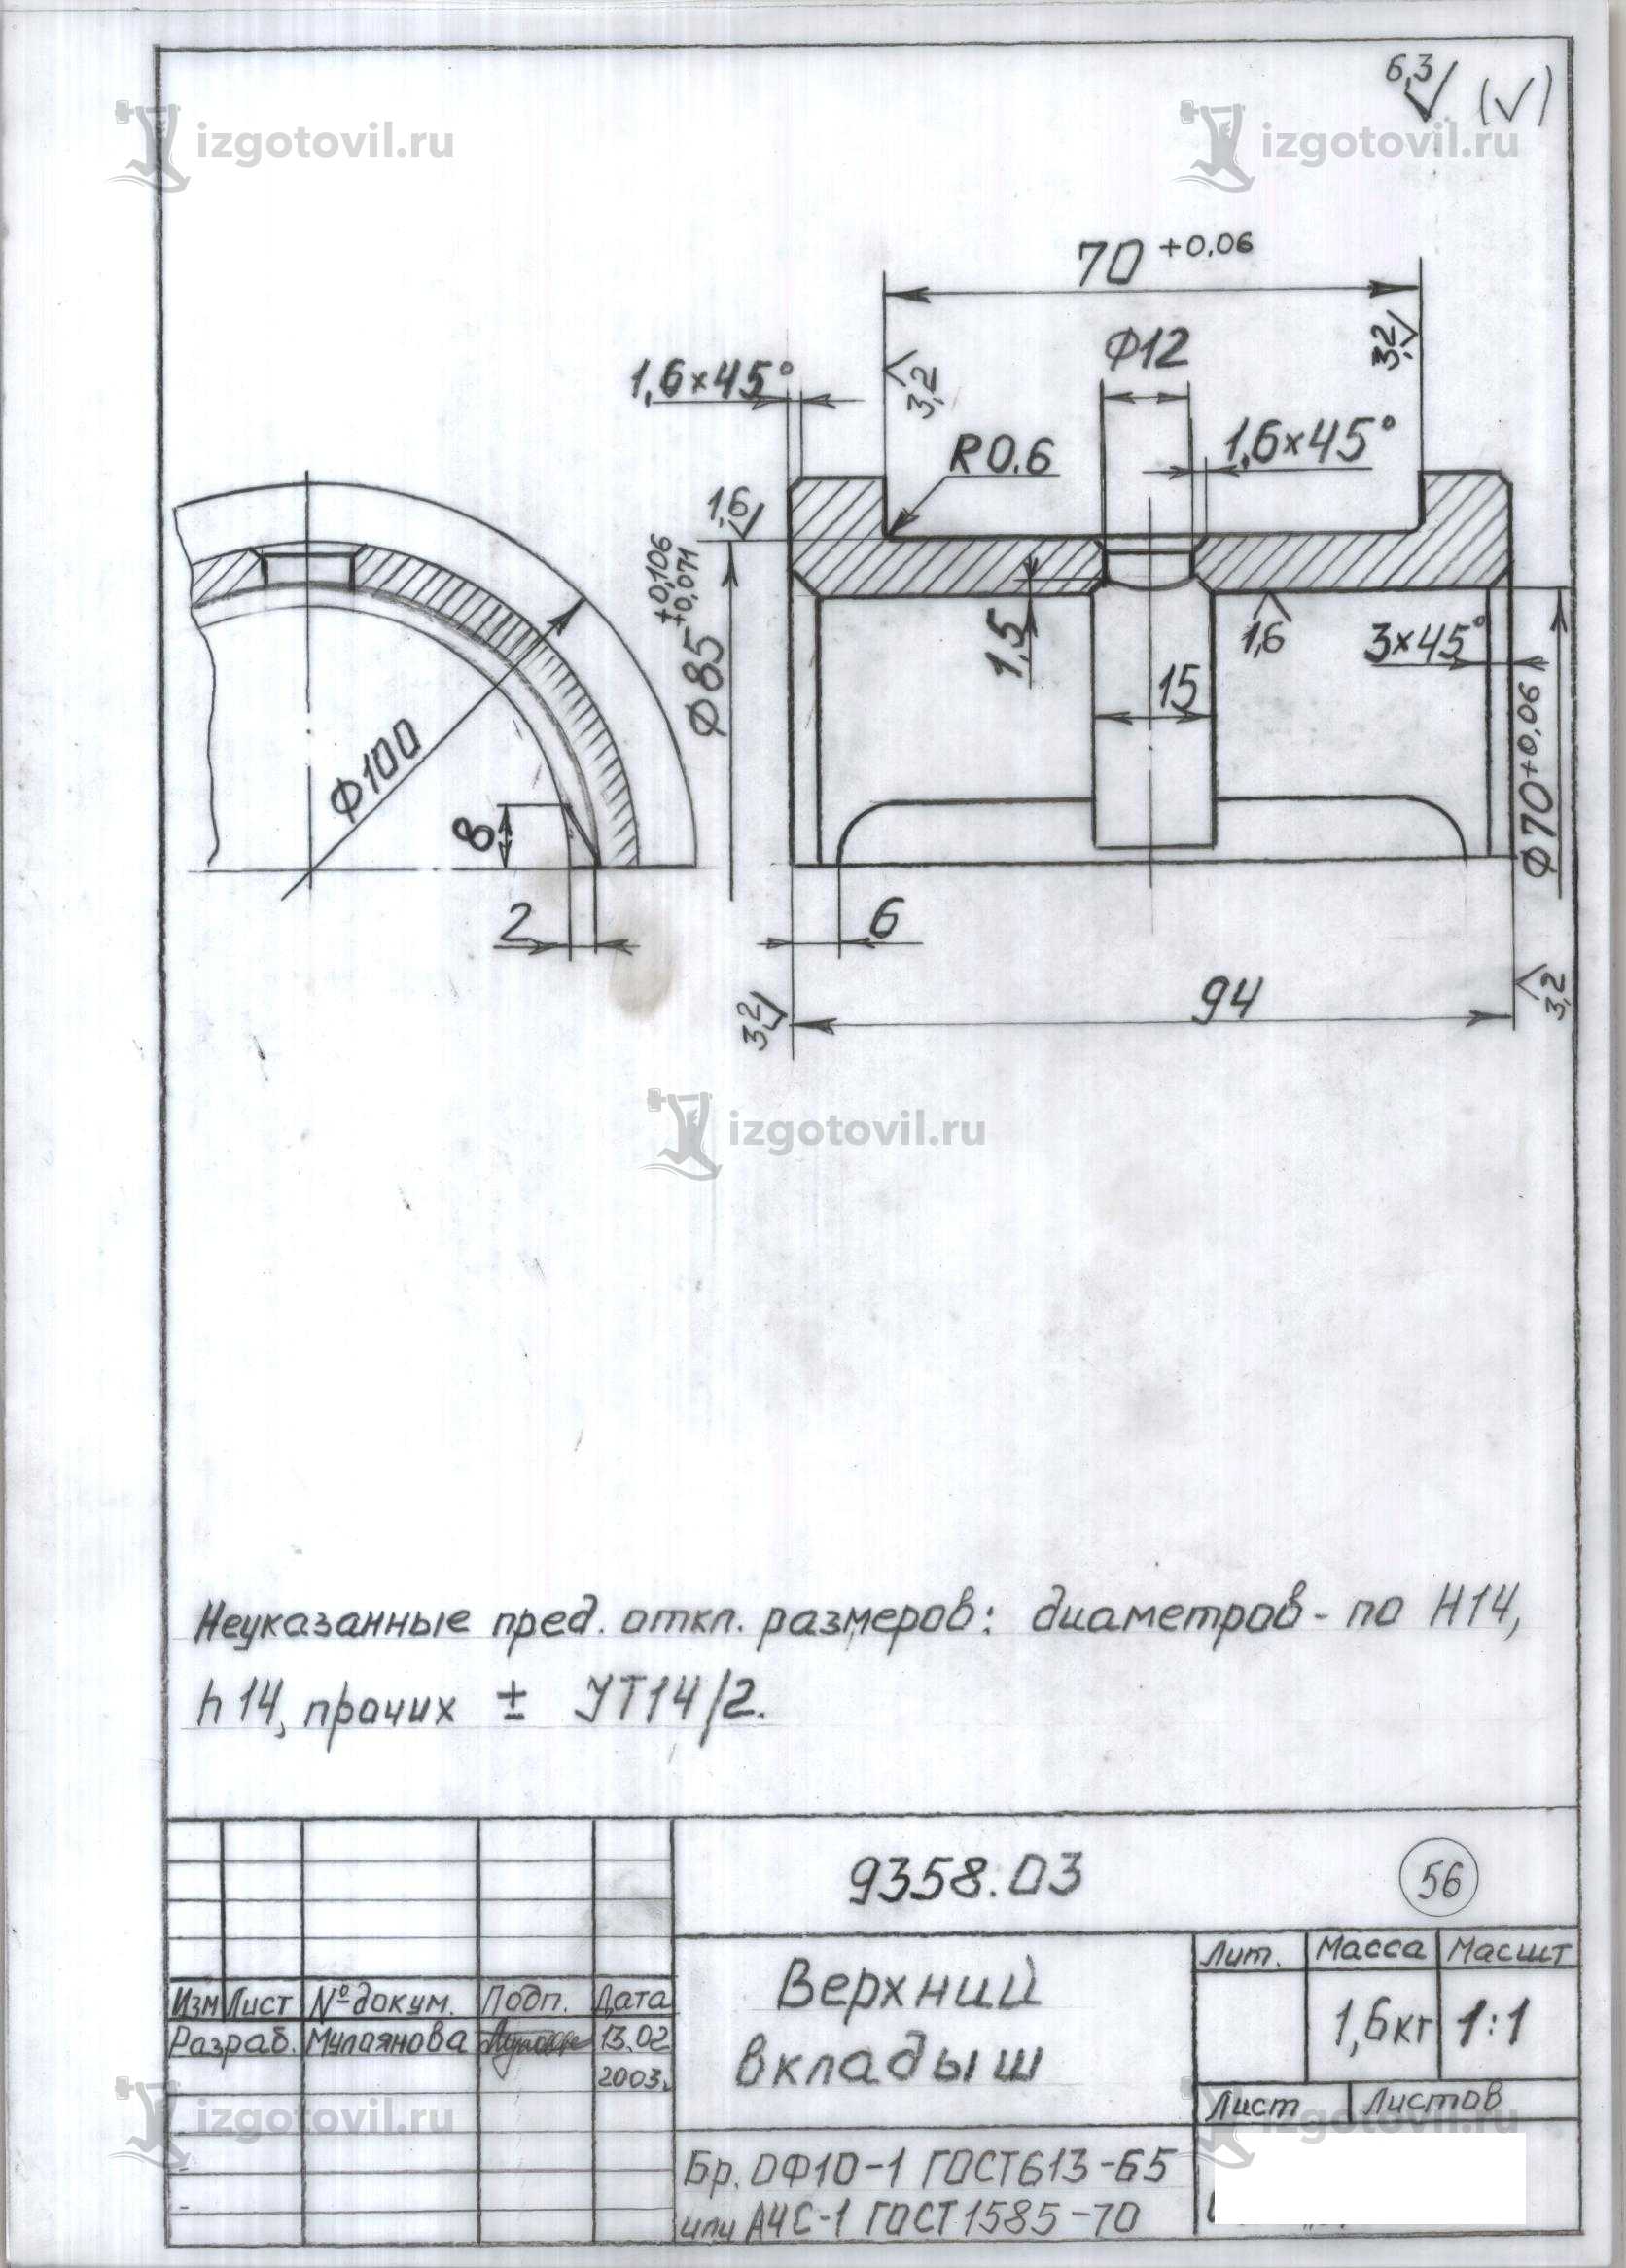 Изготовление цилиндрических деталей (колесо ВГ-4,5 с бандажом).